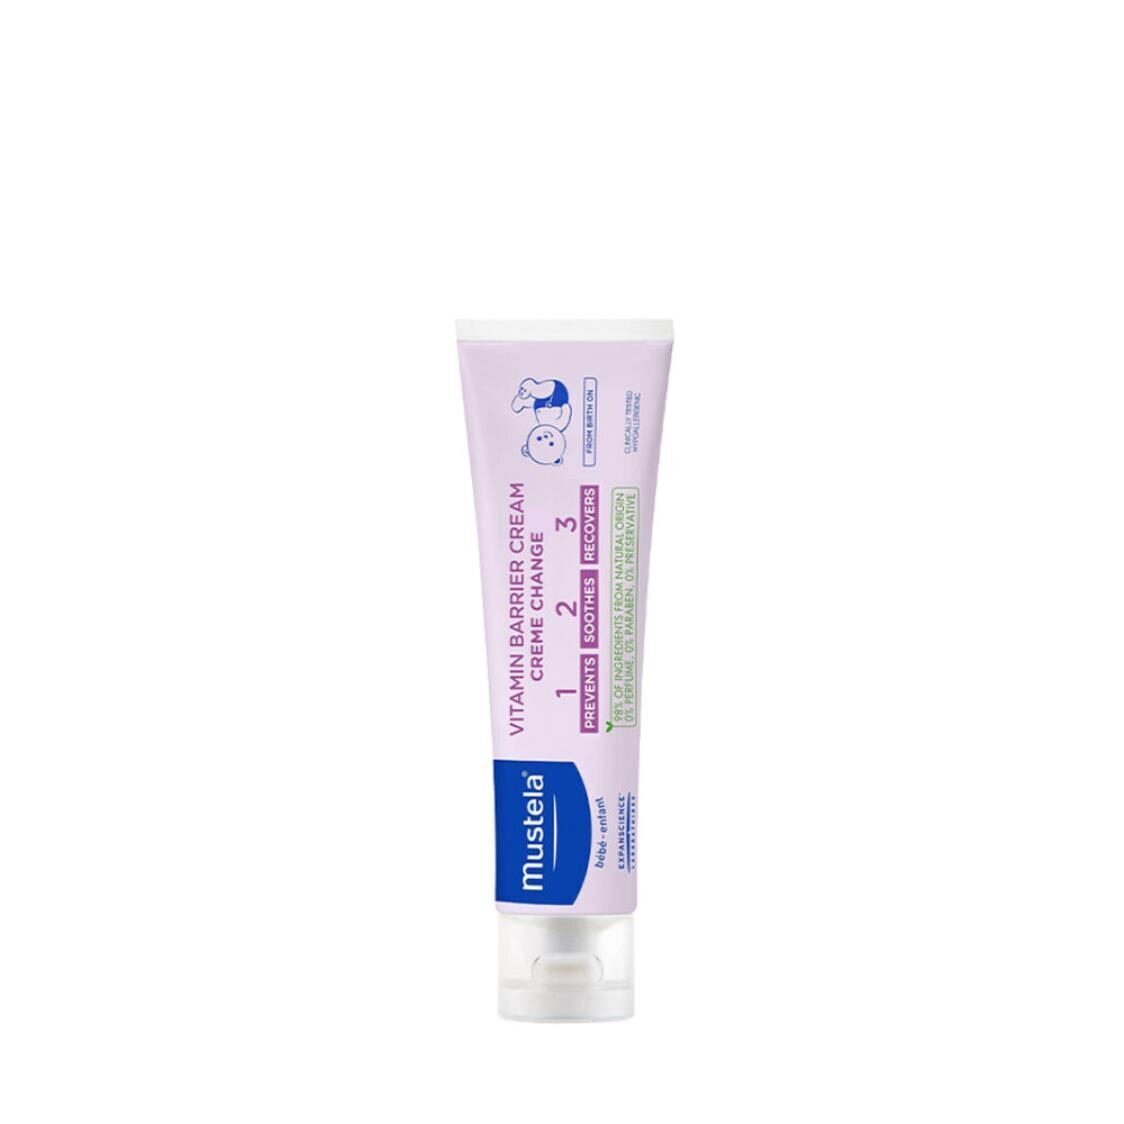 Mustela Vitamin Barrier Cream 123 For Diaper Rash 100ml